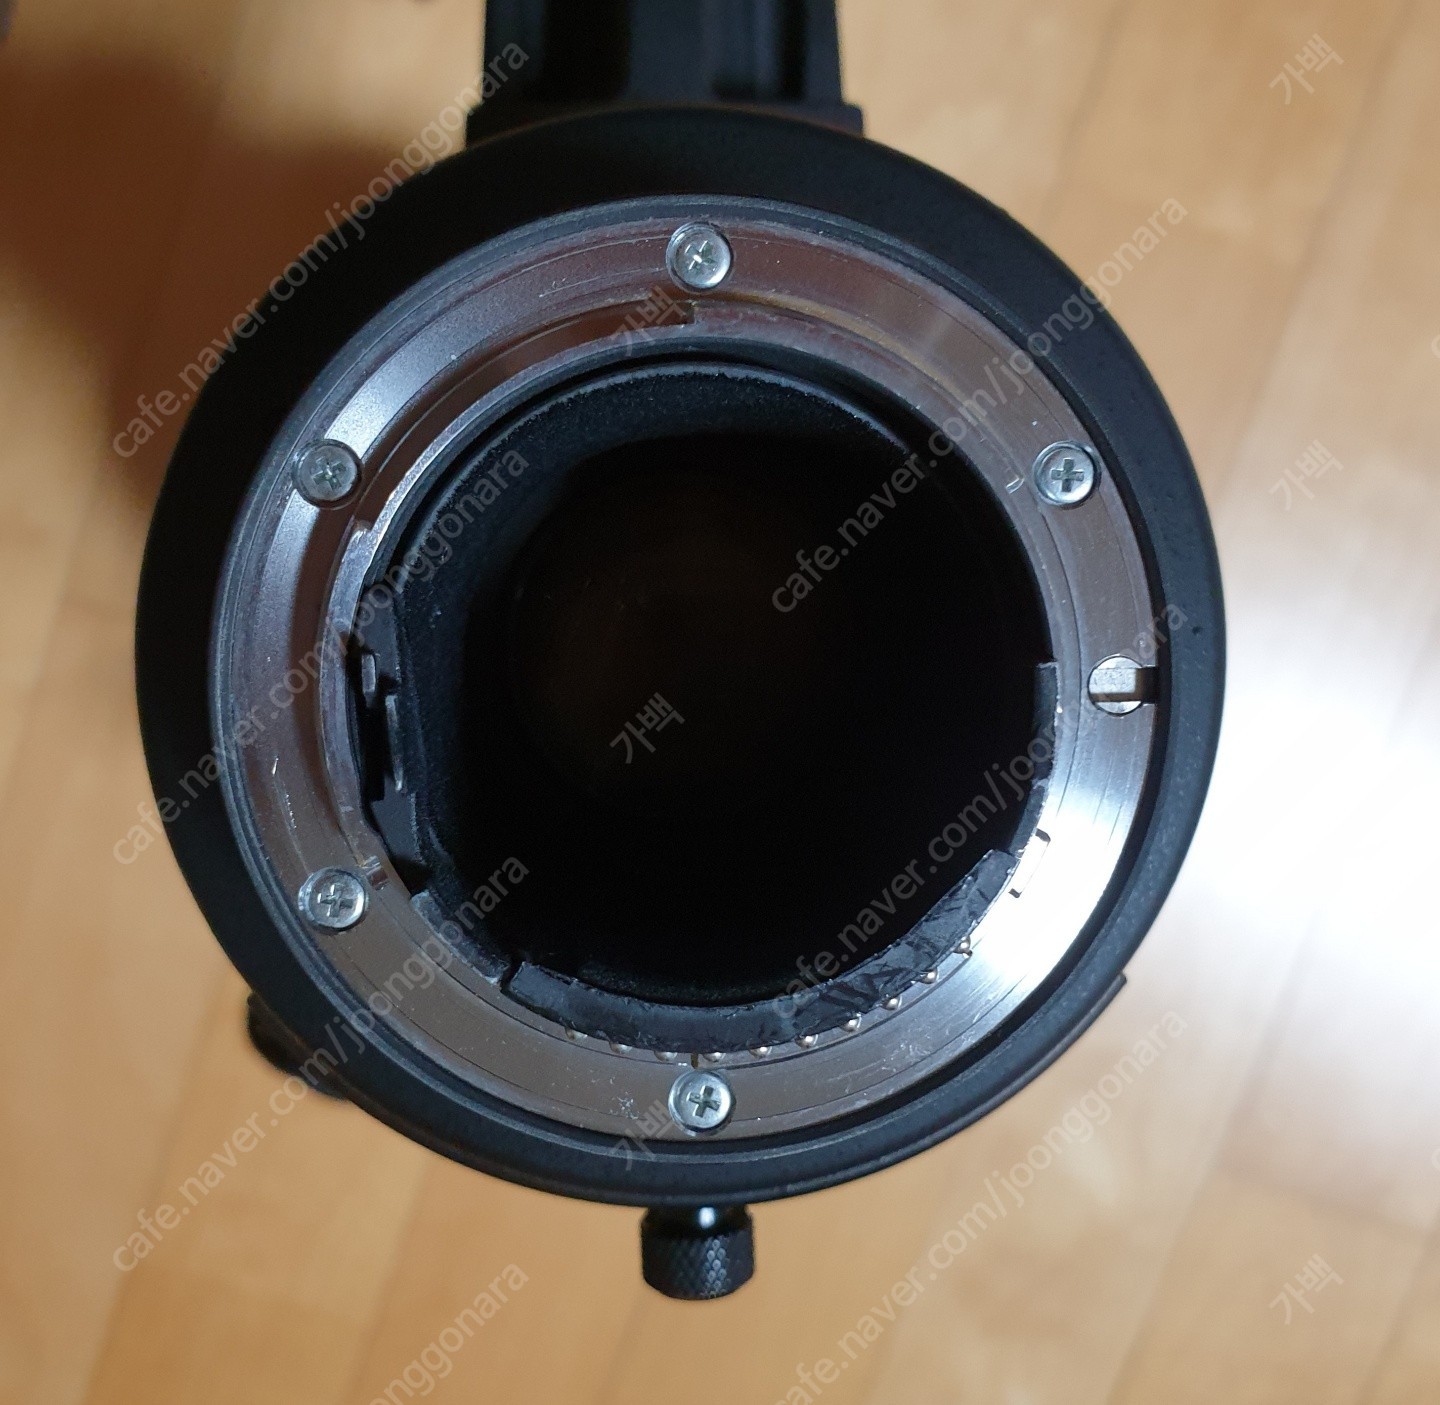 1608731989401.jpg : 니콘 NIKKOR 200-400mm f/4G ED VR II 렌즈(니콘 정품) 판매